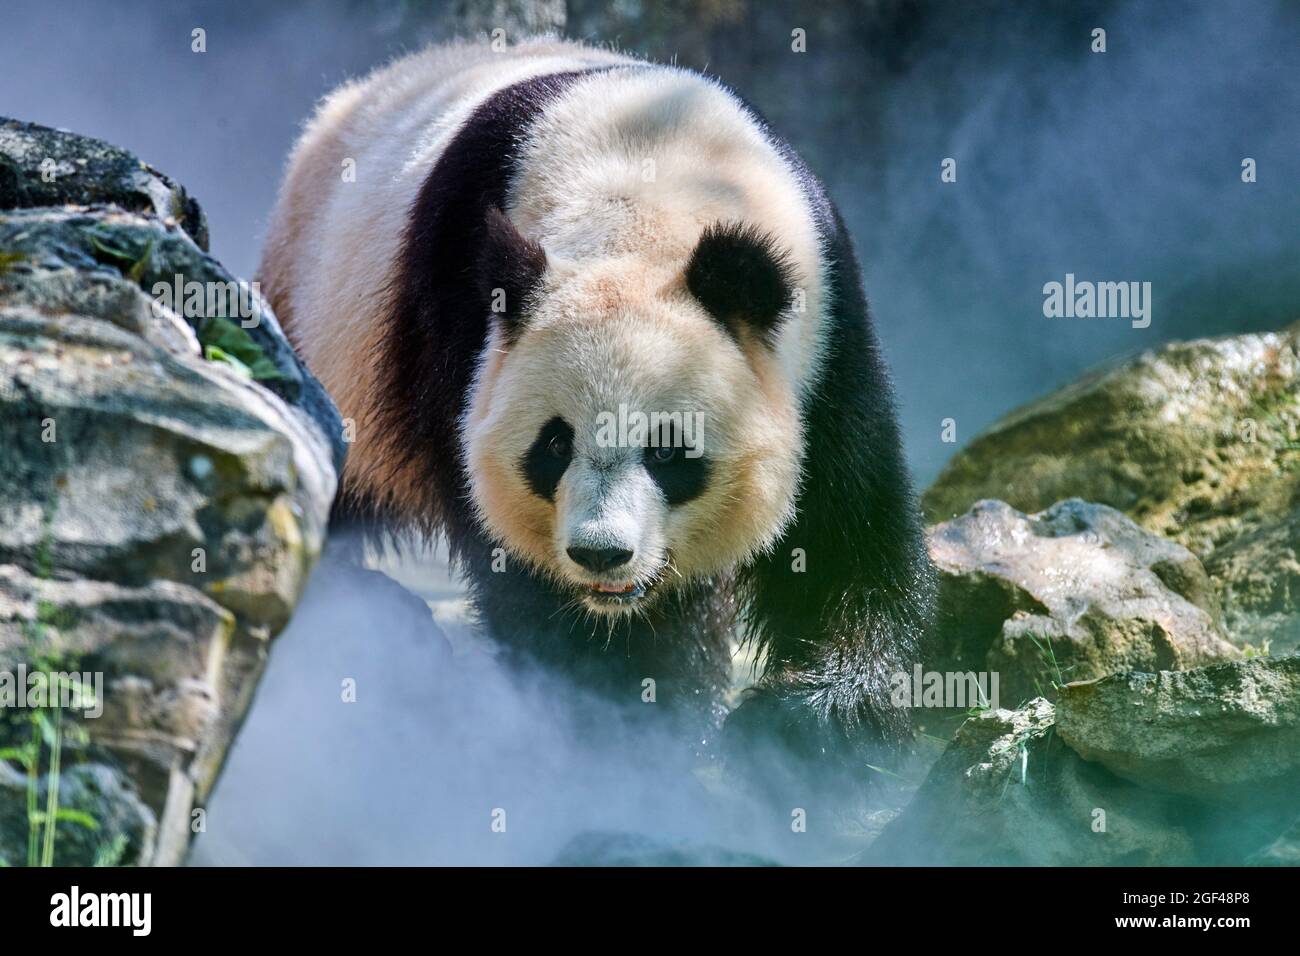 Panda gigante (Ailuropoda melanoleuca) hembra Huan Huan en su recinto en niebla, cautivo en el zoológico de Beauval, Saint Aignan sur Cher, Francia. La niebla Foto de stock